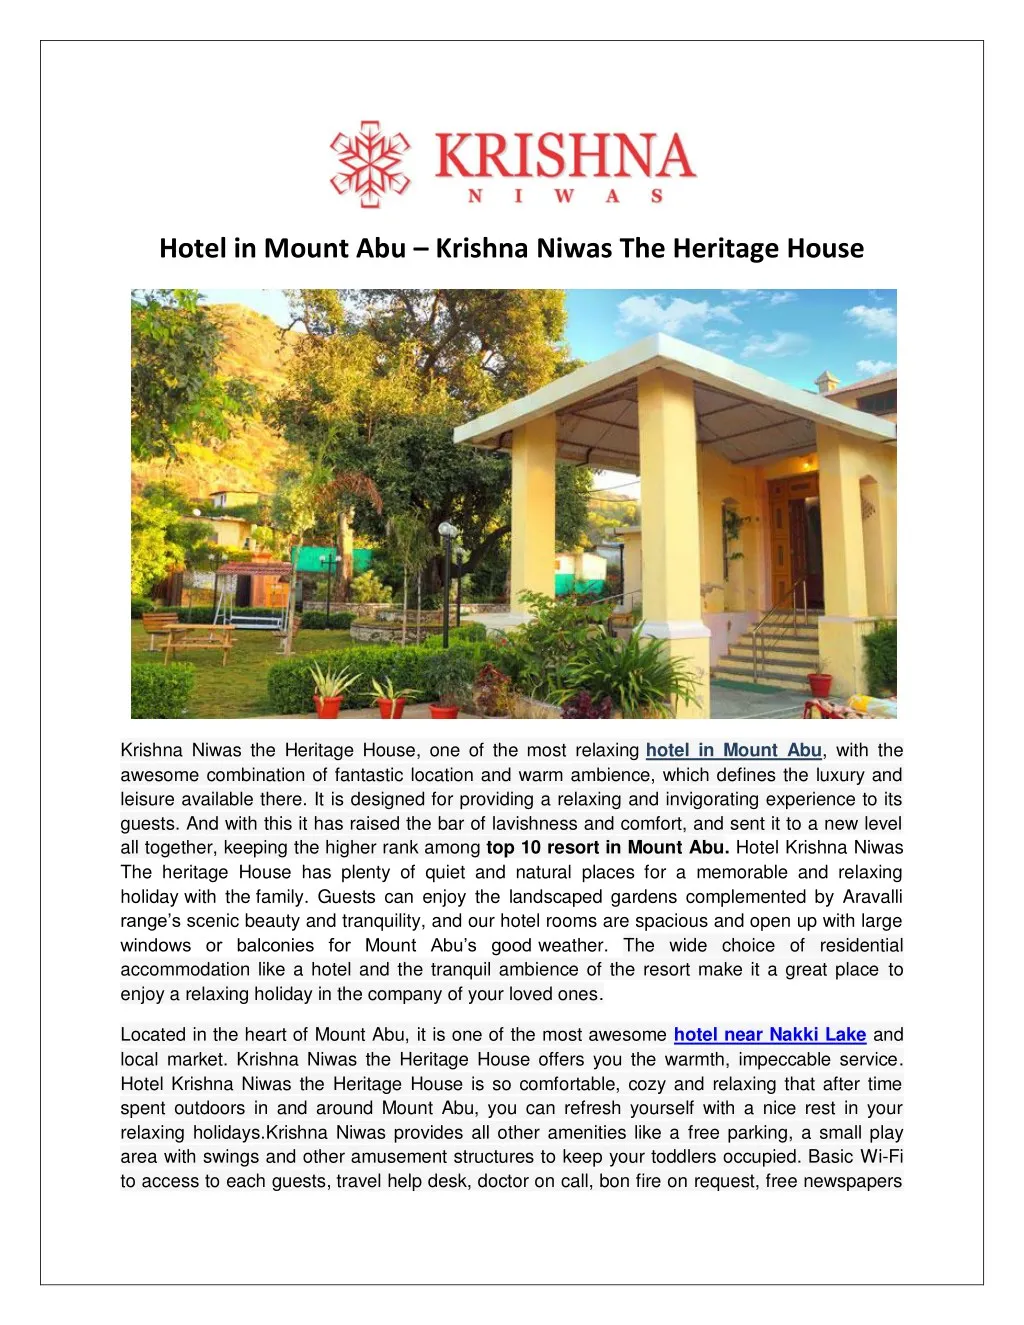 hotel in mount abu krishna niwas the heritage